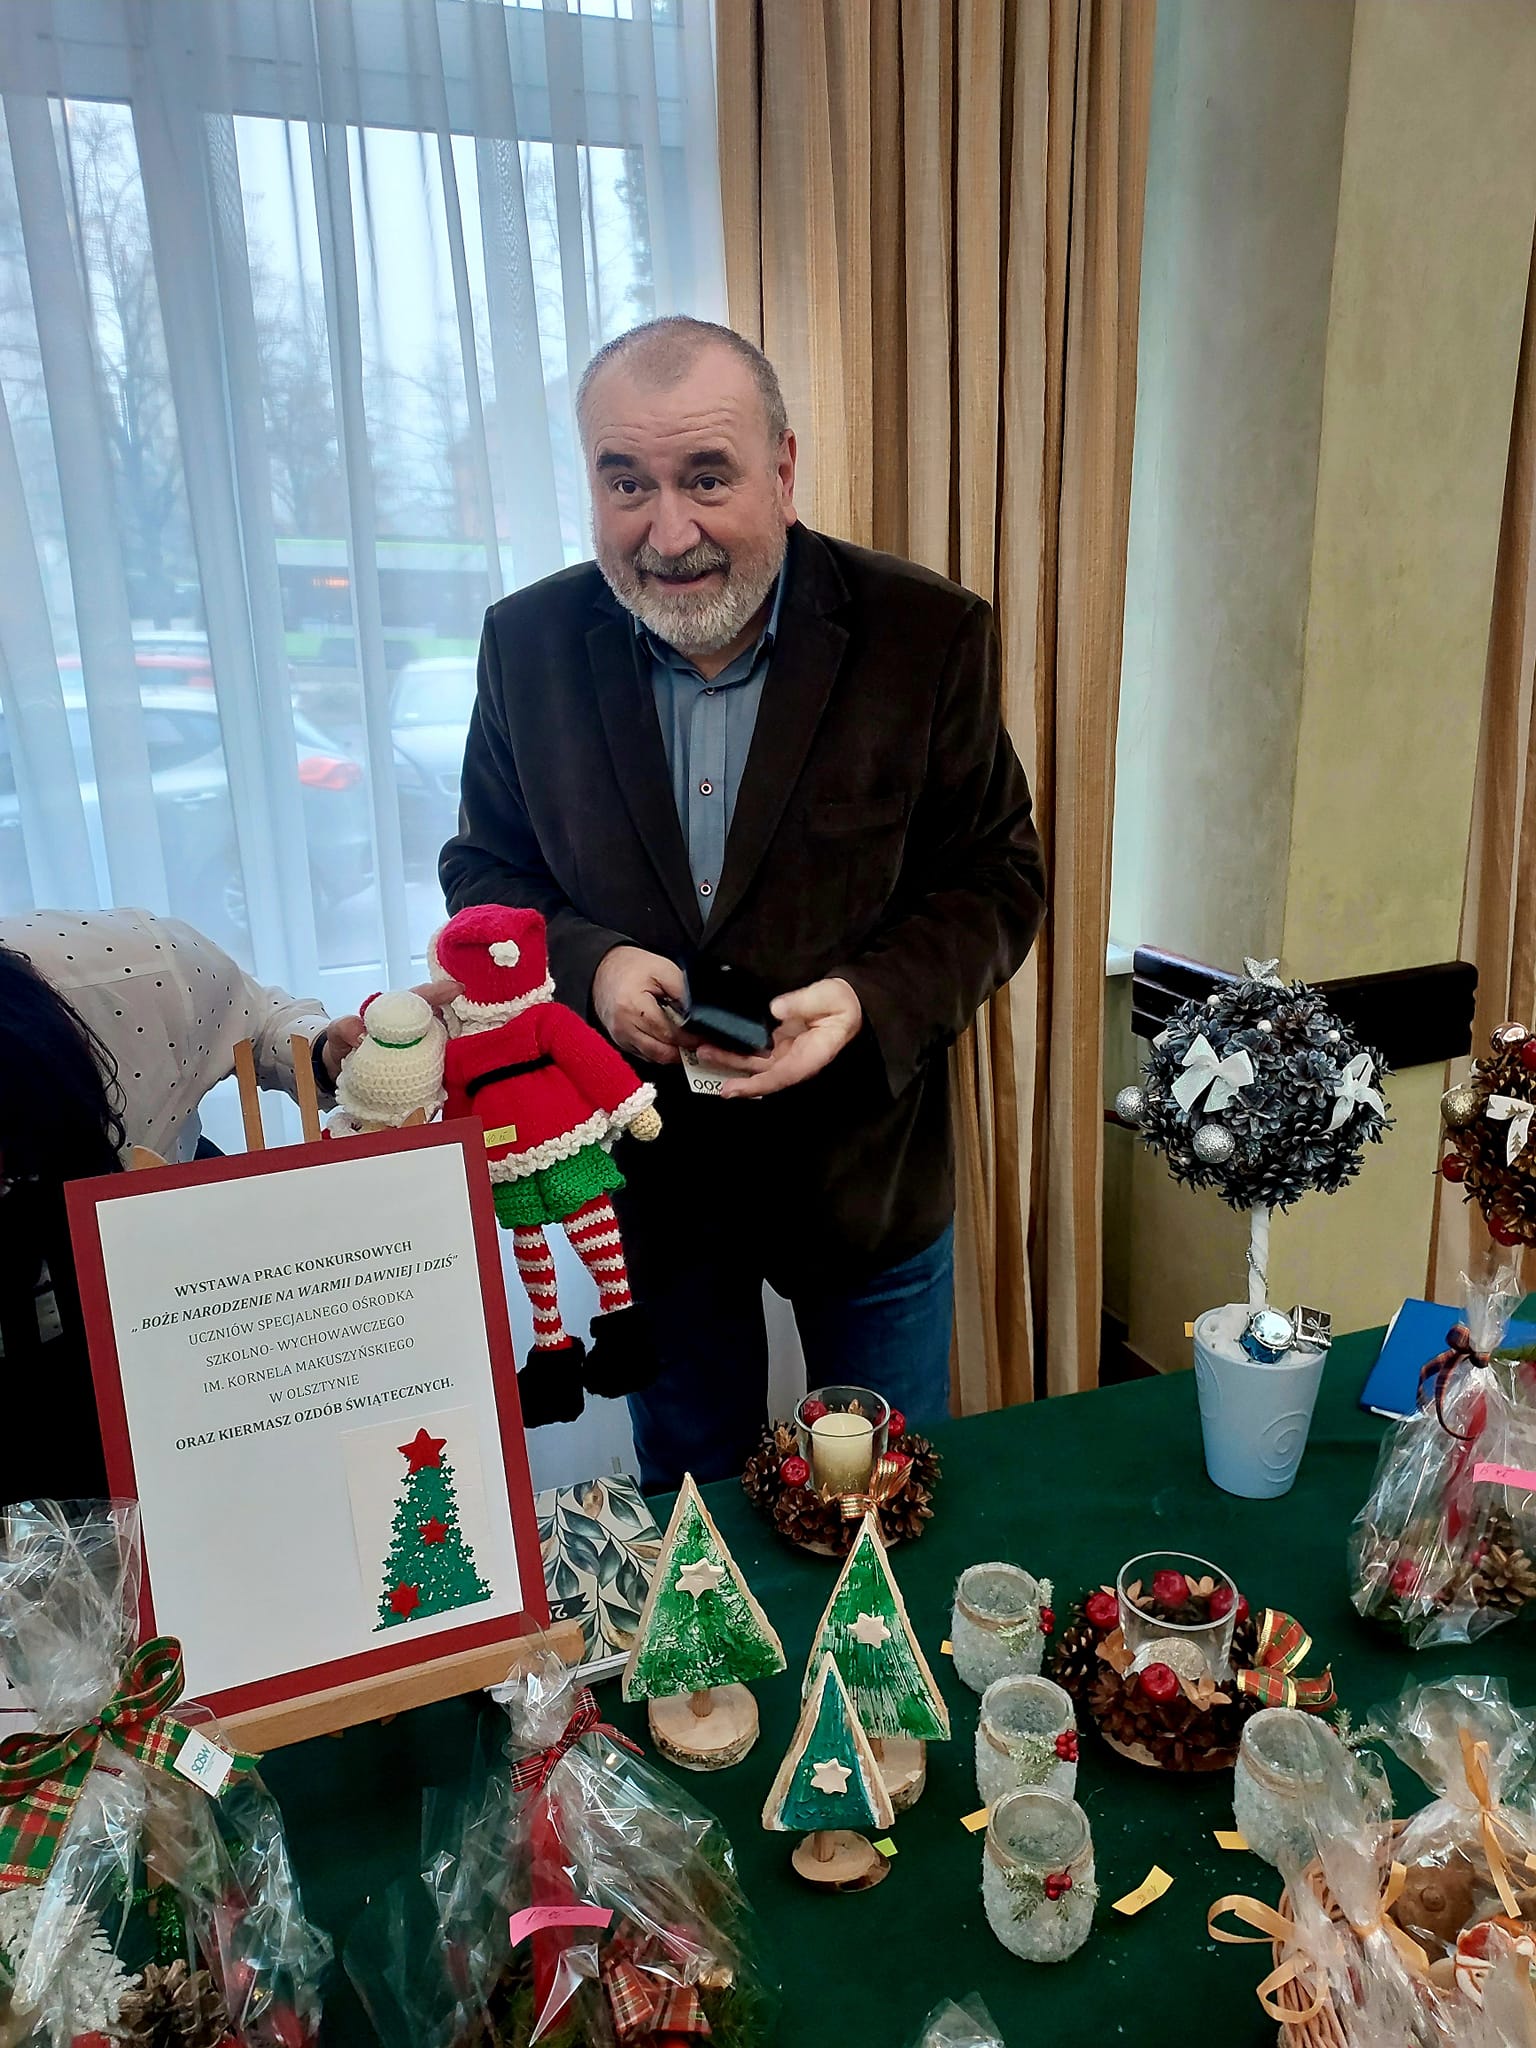 Pan Dyrektor Szkolnego Schroniska Młodzieżowego w Olsztynie kupuje ozdoby świąteczne.